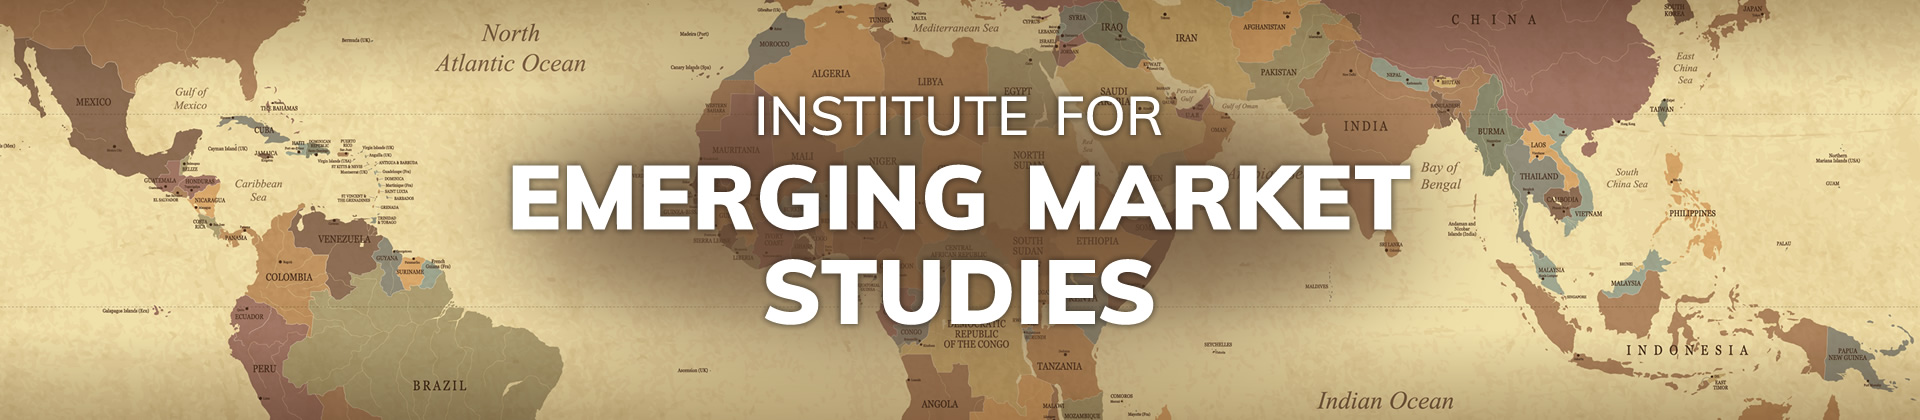 Institute for Emerging Market Studies